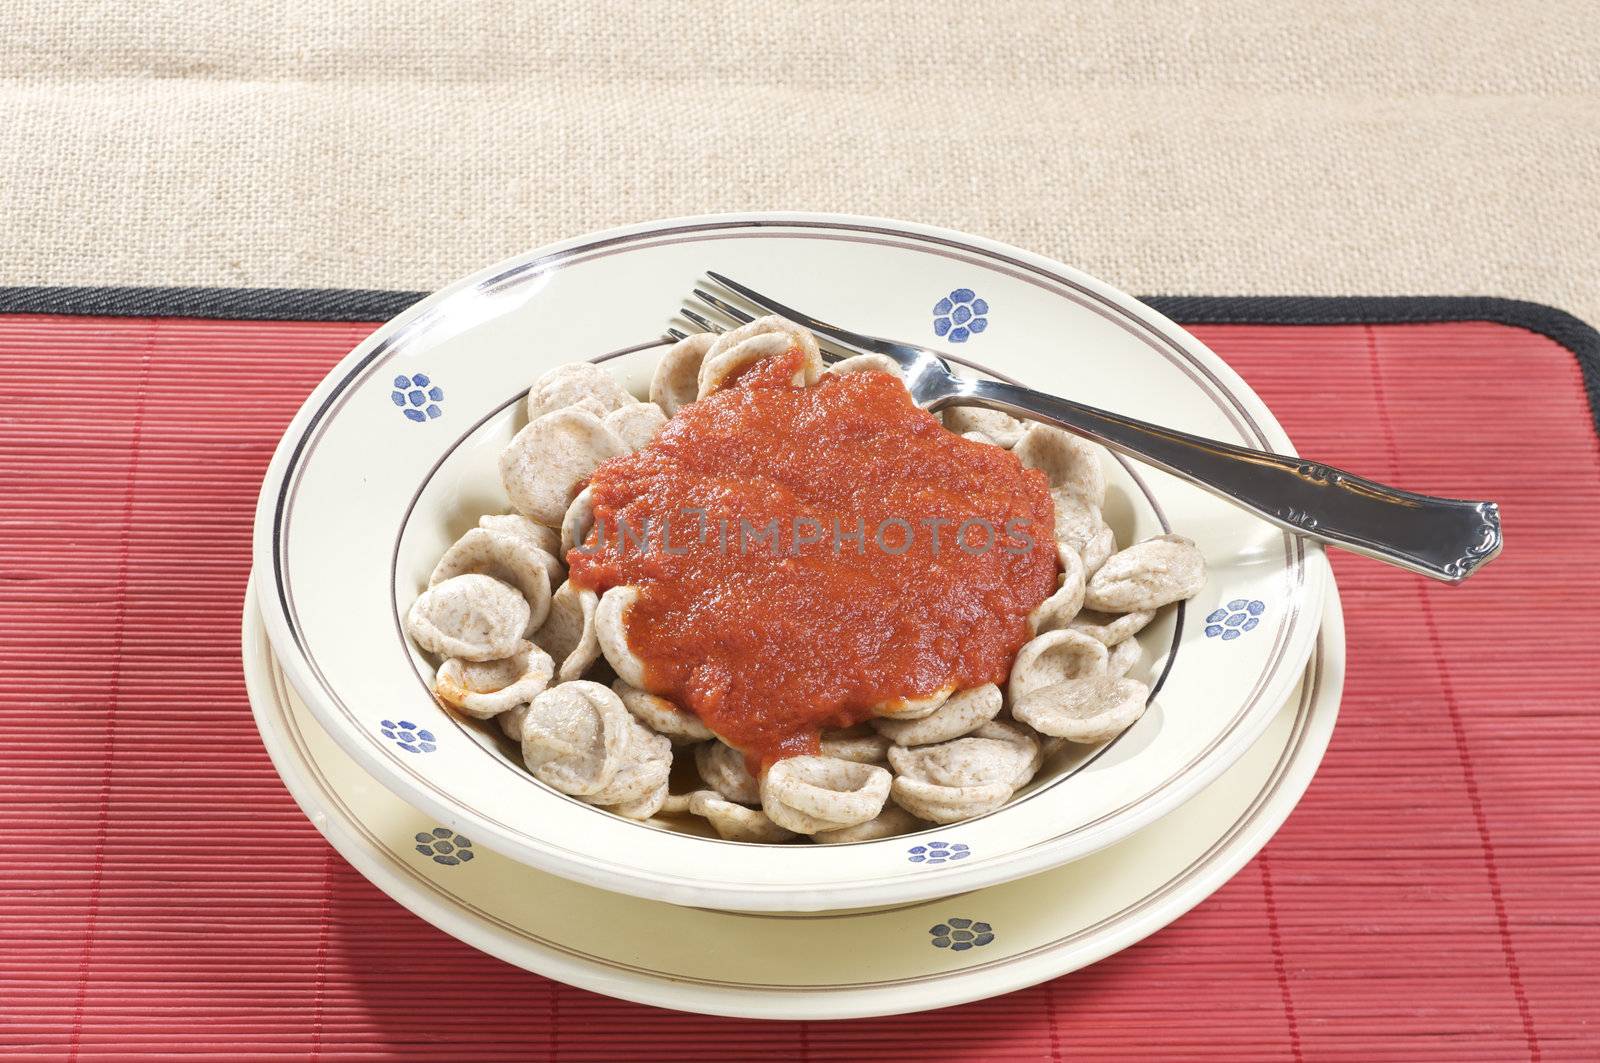 "orecchiette" pasta with tomato sauce